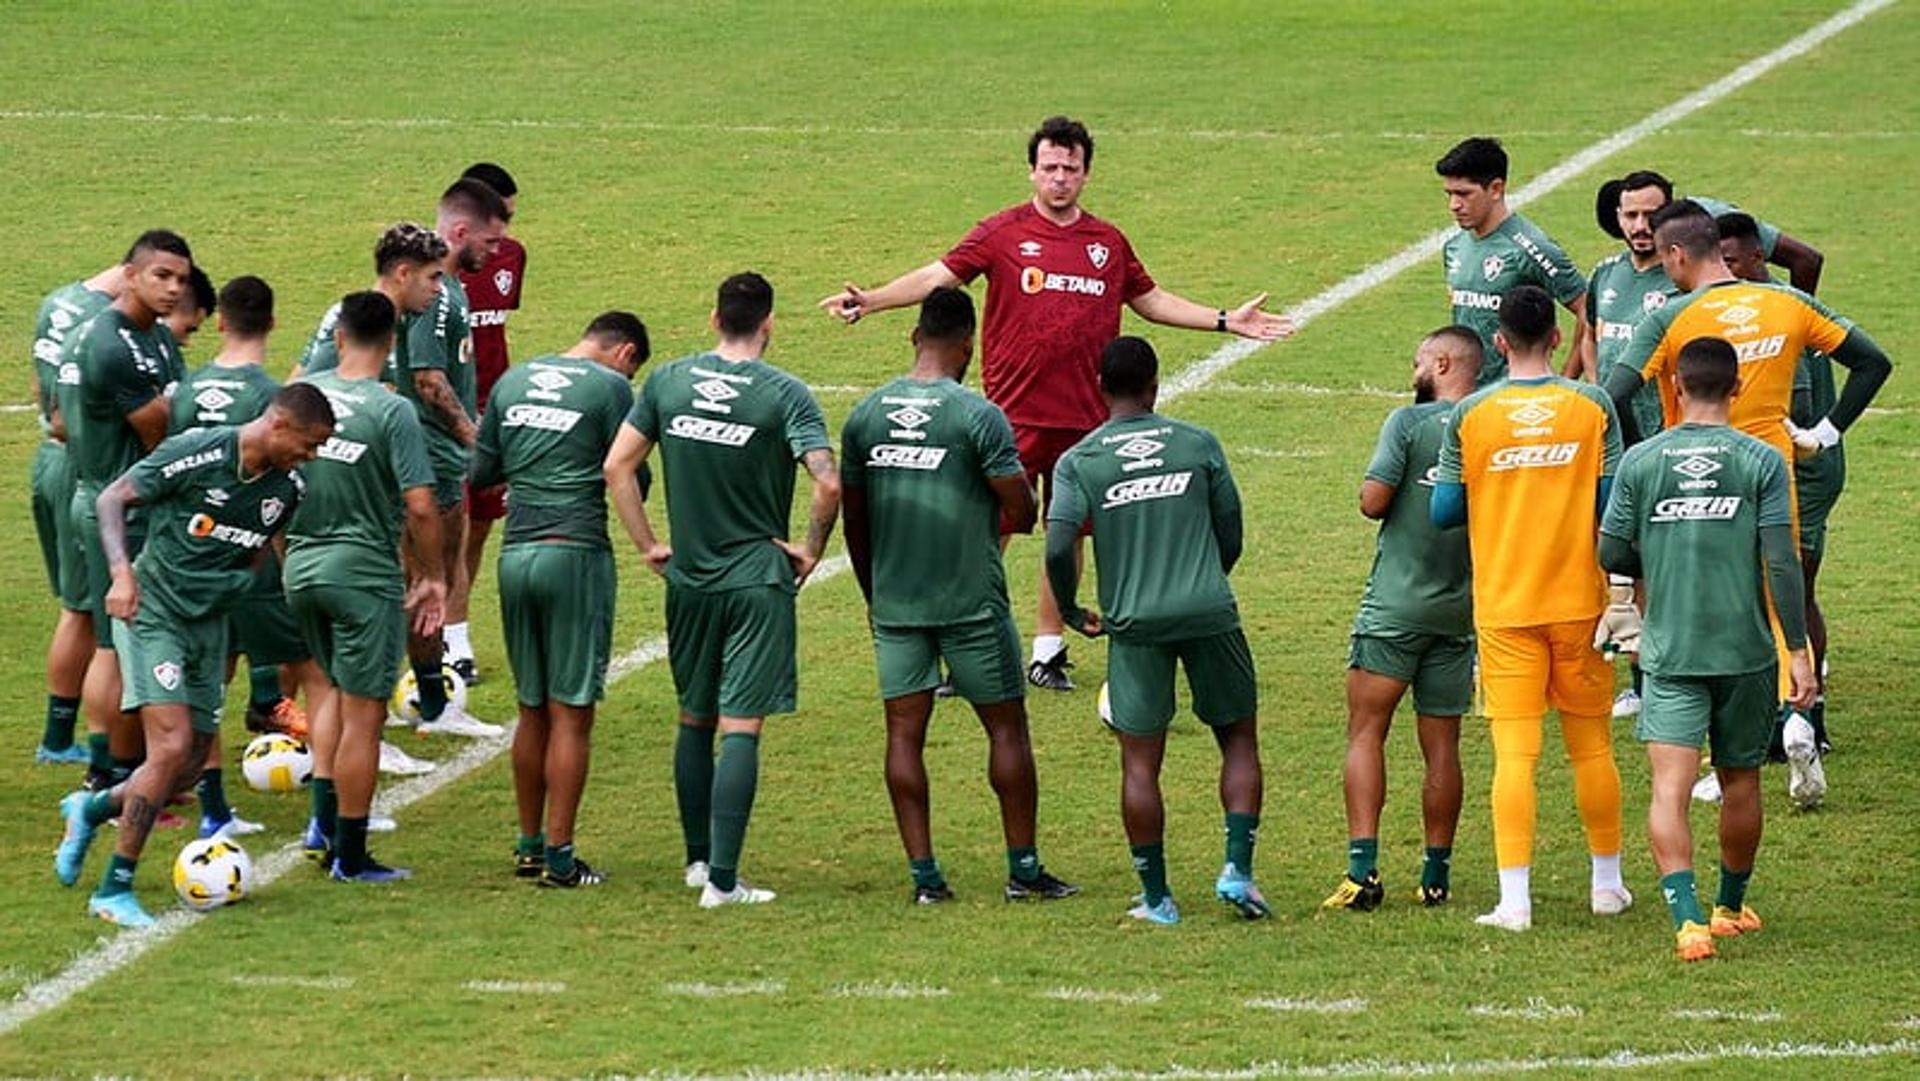 Fluminense - grupo